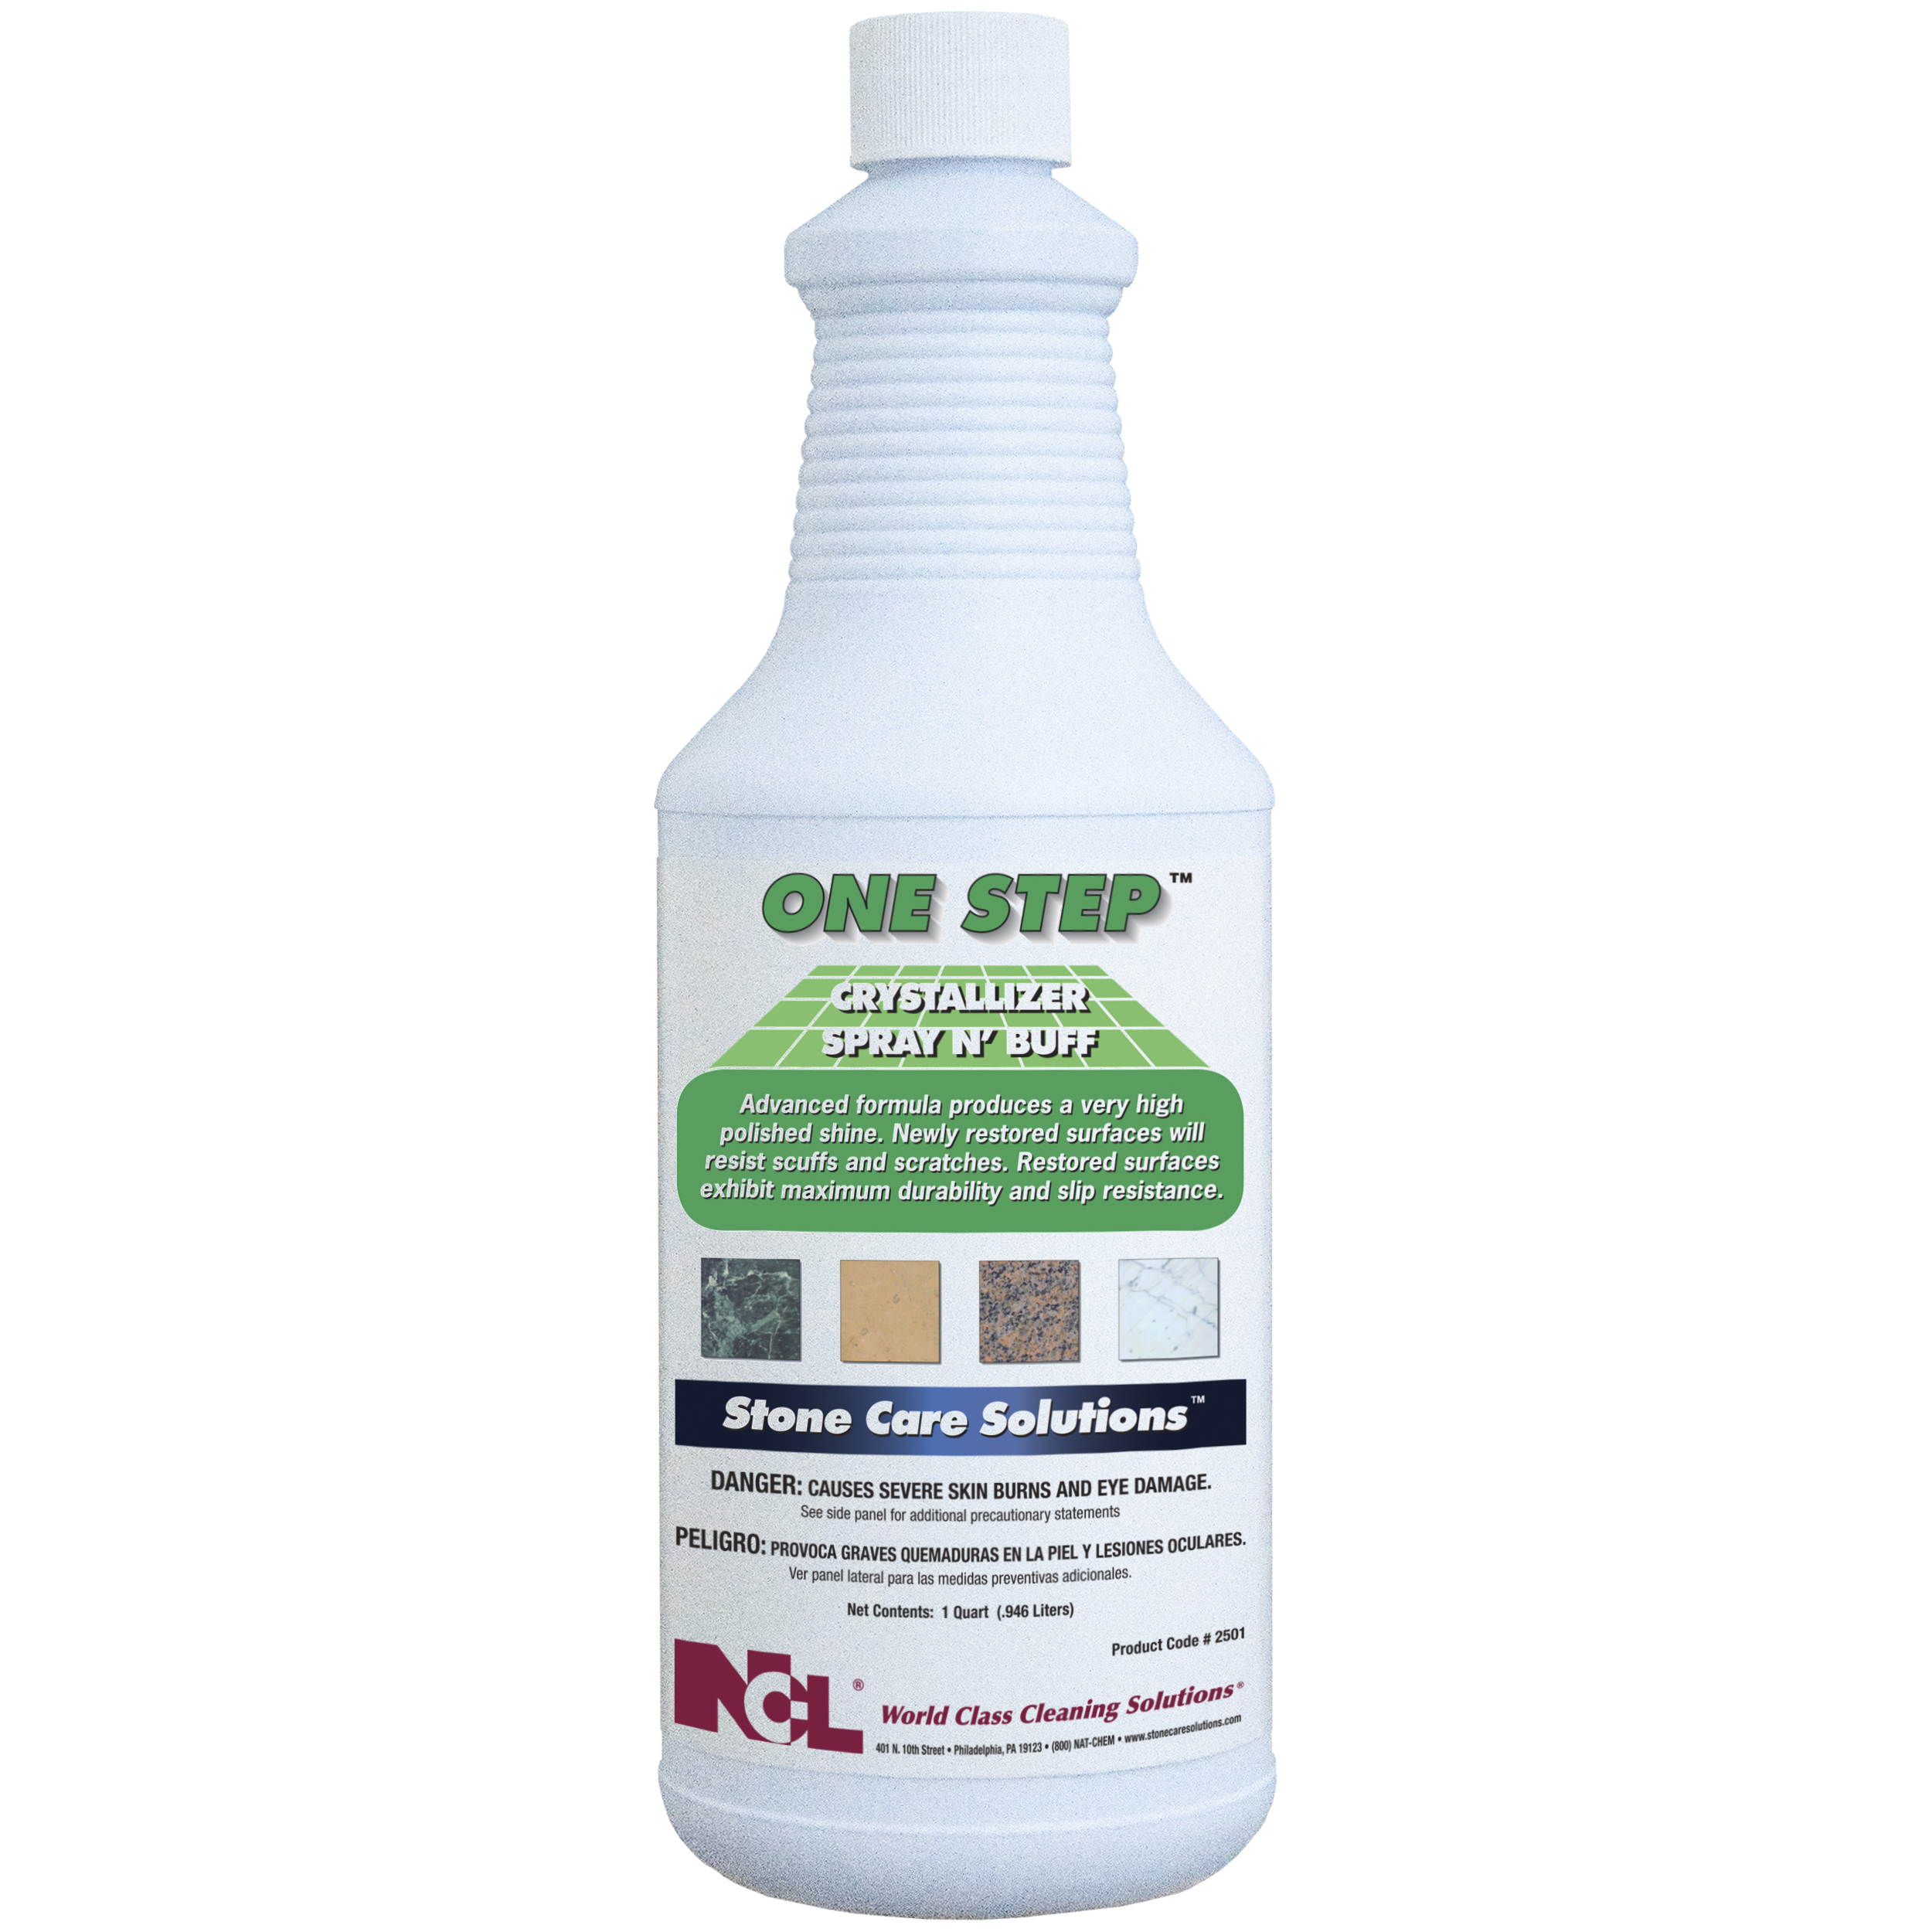  ONE STEP Crystallizer Spray N' Buff 12/32 oz (1 Qt.) Case (NCL2501-36) 